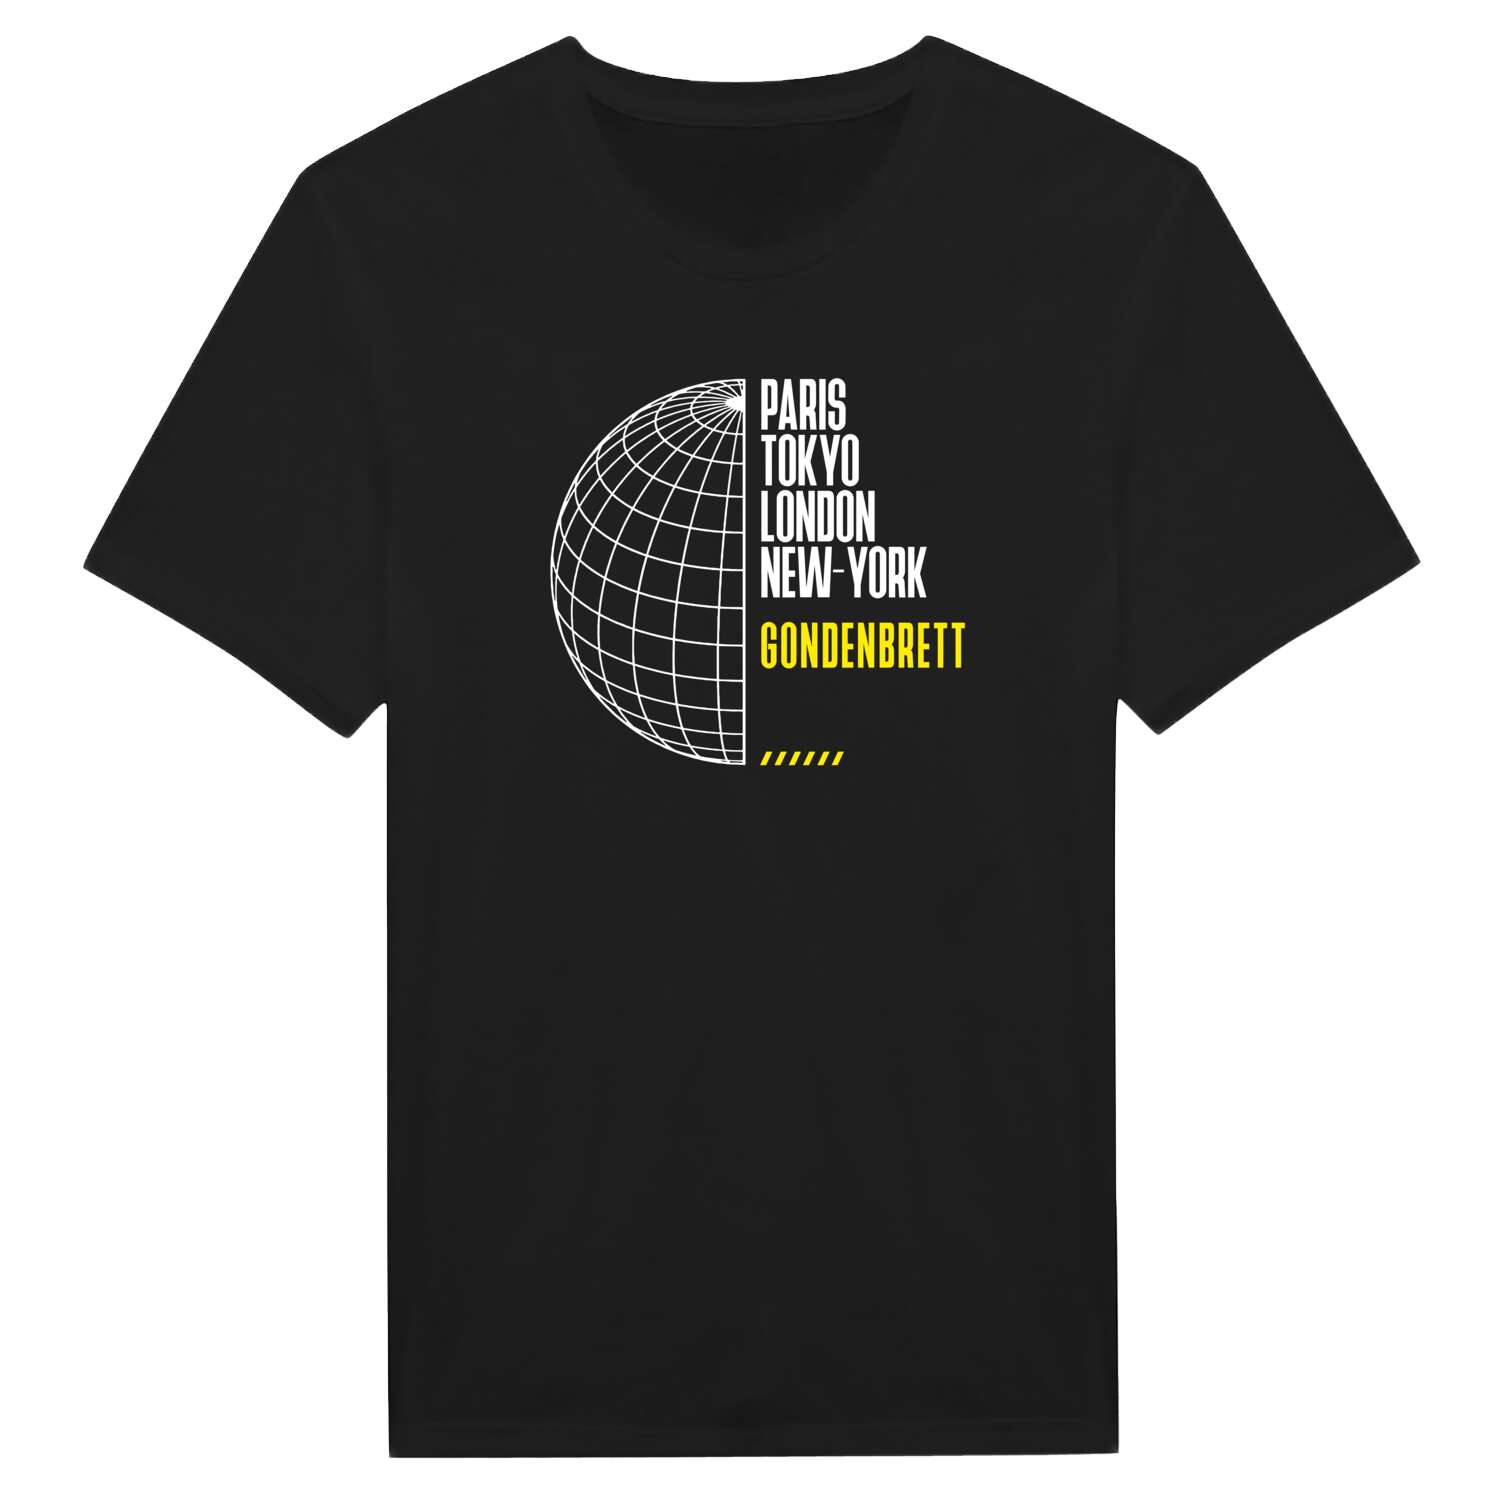 Gondenbrett T-Shirt »Paris Tokyo London«